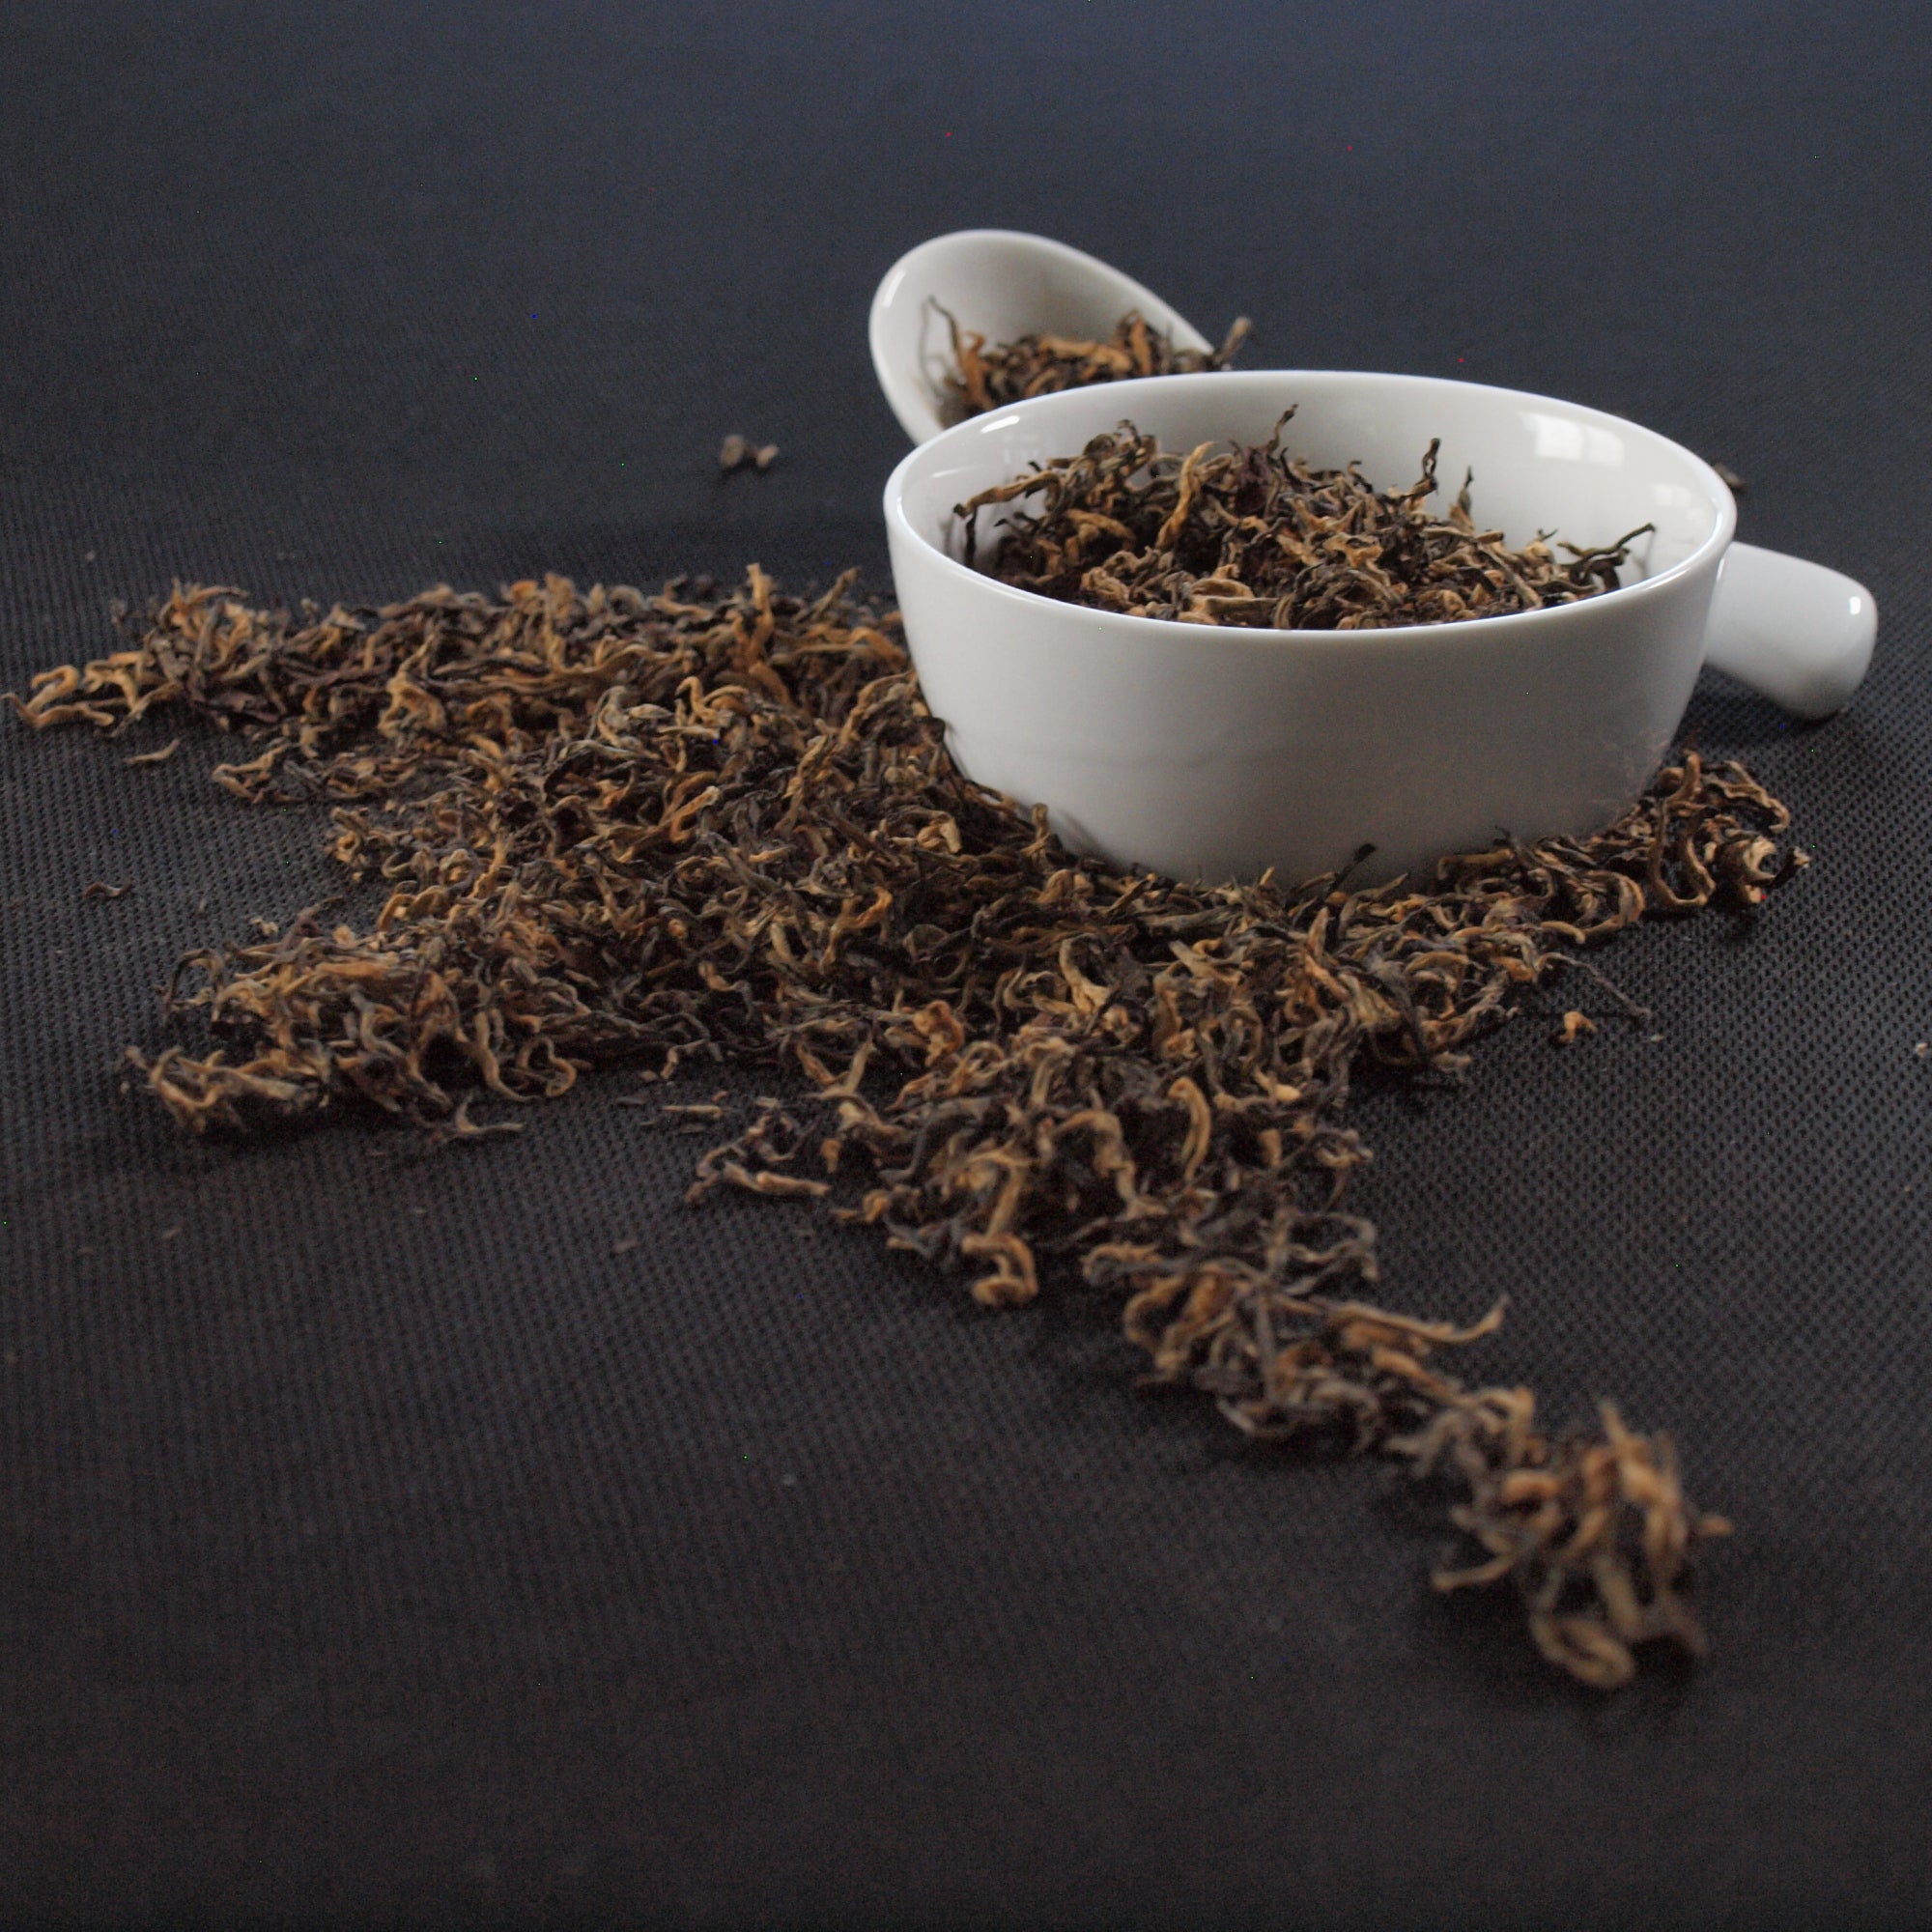 specialty tea, loose leaf tea, black tea, with dish